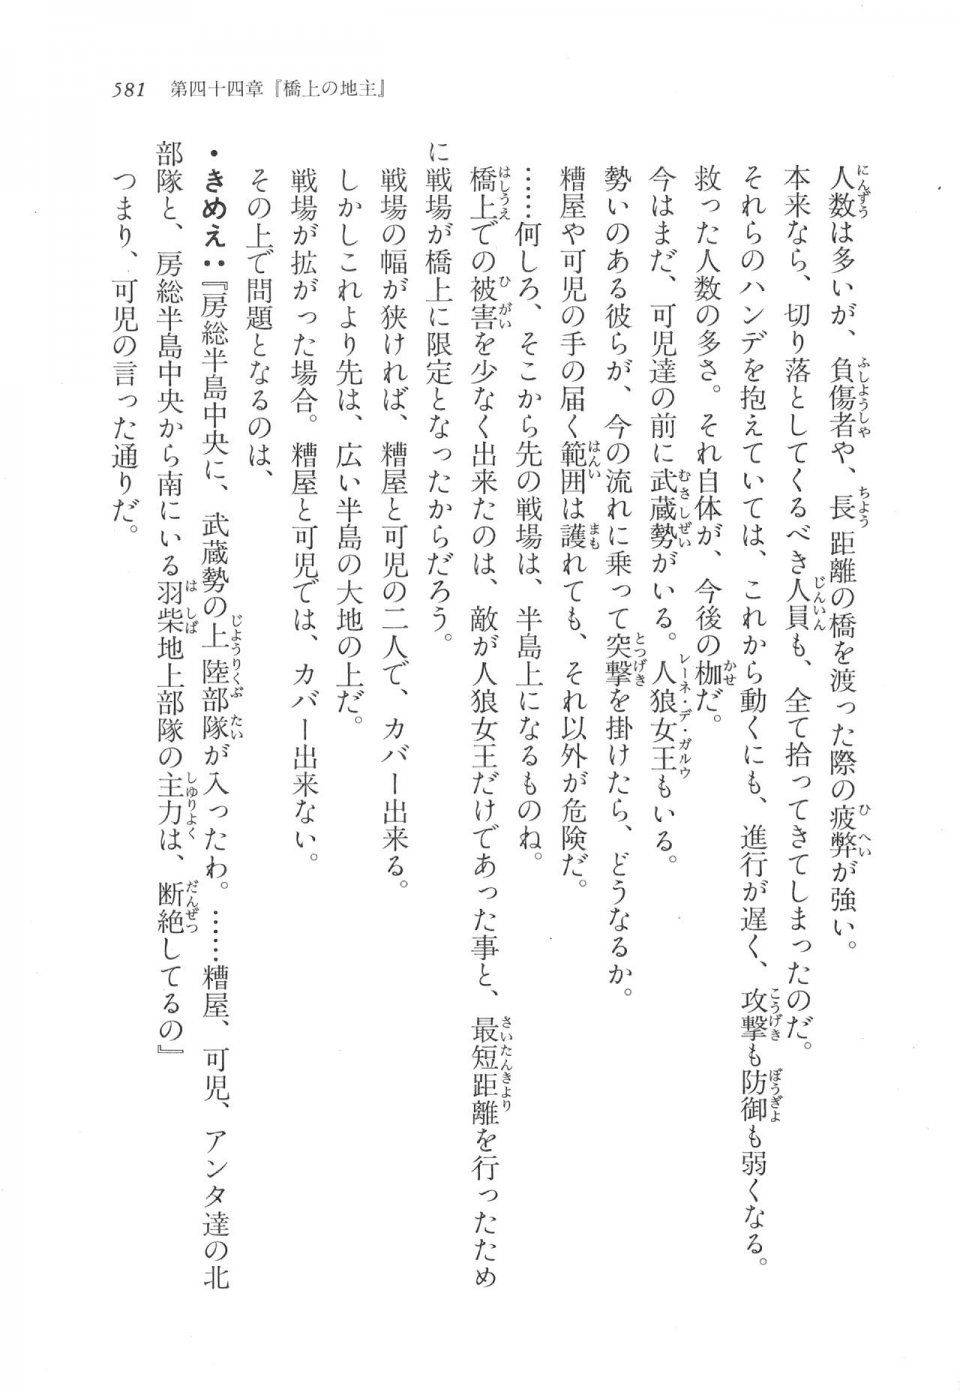 Kyoukai Senjou no Horizon LN Vol 17(7B) - Photo #582